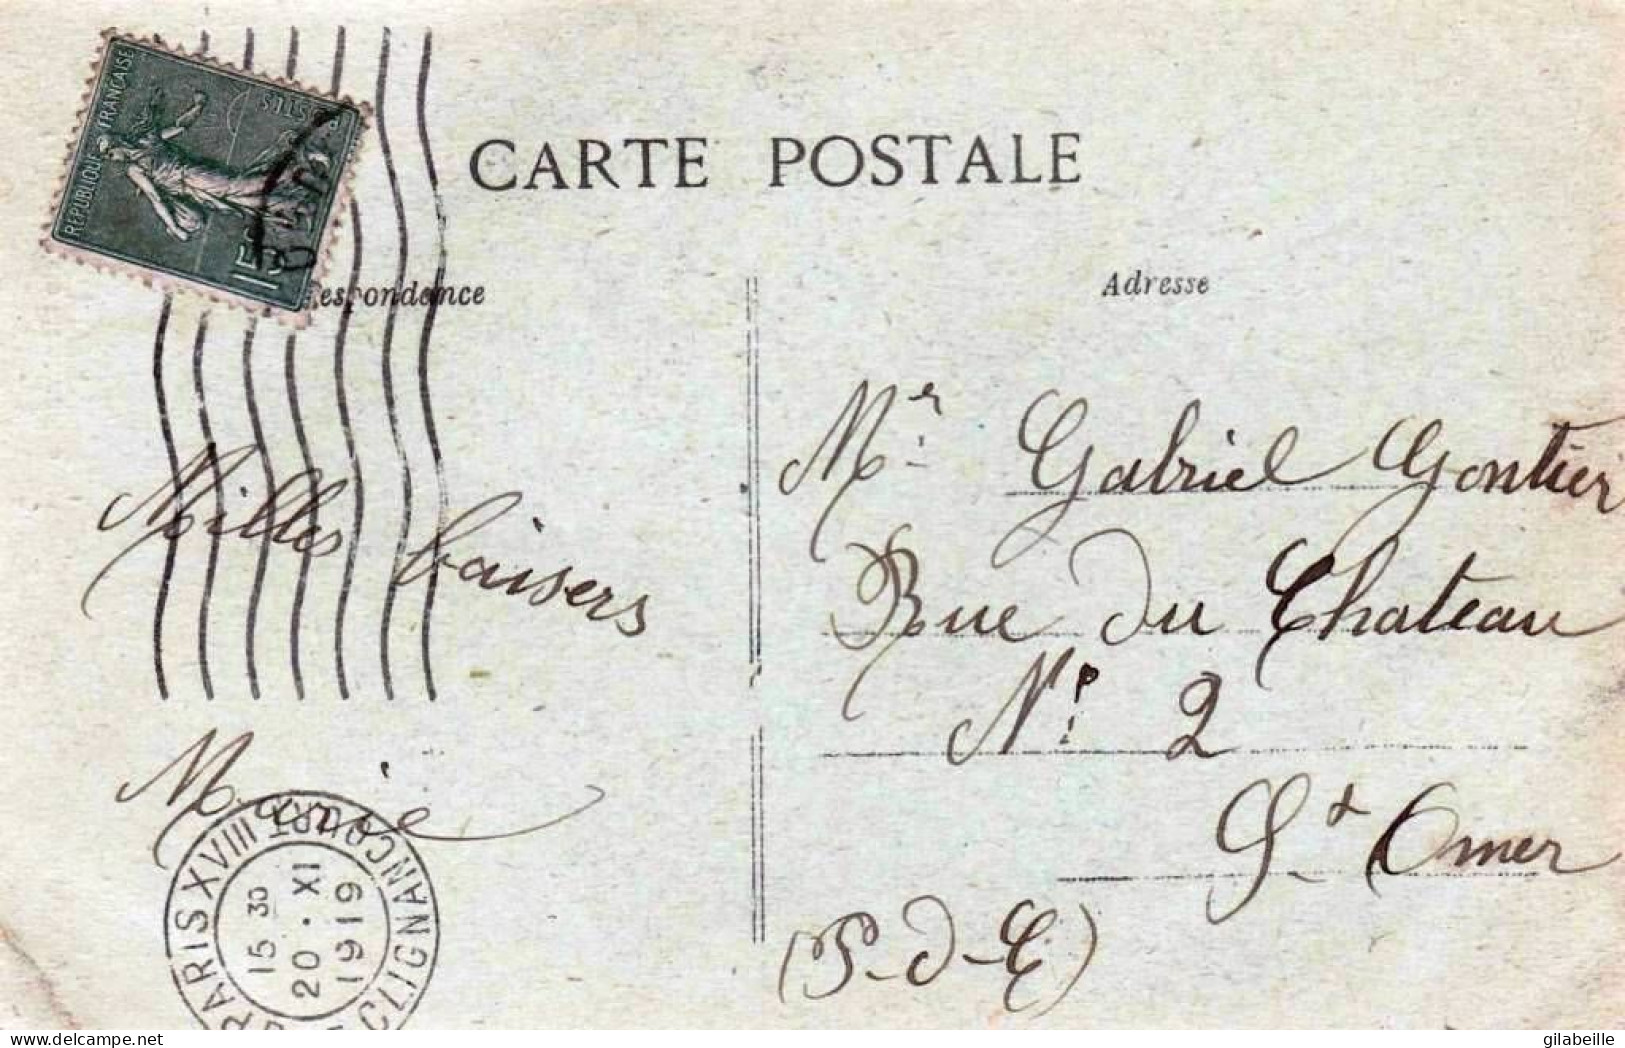 75 - PARIS 18 -  La Sirene De Montmartre - Souvenir De 1918 - District 18